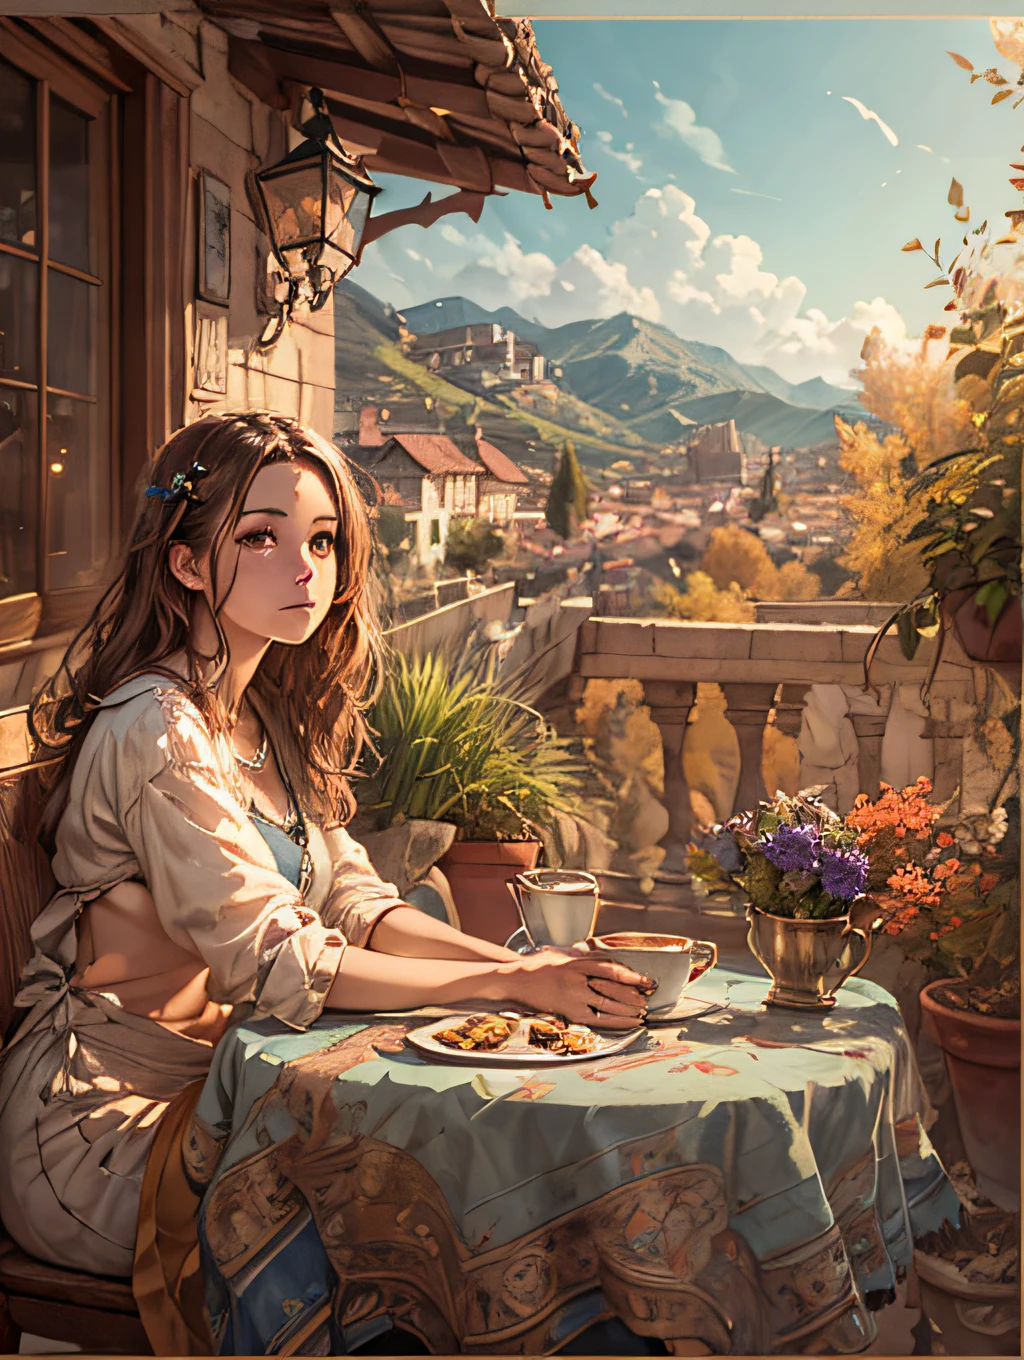 "(걸작), (최상의 품질), 테라스의 테이블 뒤에 앉아 있는 젊은 여성의 복잡하고 세밀한 초상화, 그녀의 손은 테이블 위에 올려져 있다. 그녀는 갈색 머리를 가지고 있습니다, 빛나는 표현, 아트웍은 놀라운 8K 해상도로 렌더링됩니다.. 배경은 햇빛을 쬐고 있는 그림 같은 계곡을 묘사합니다.."